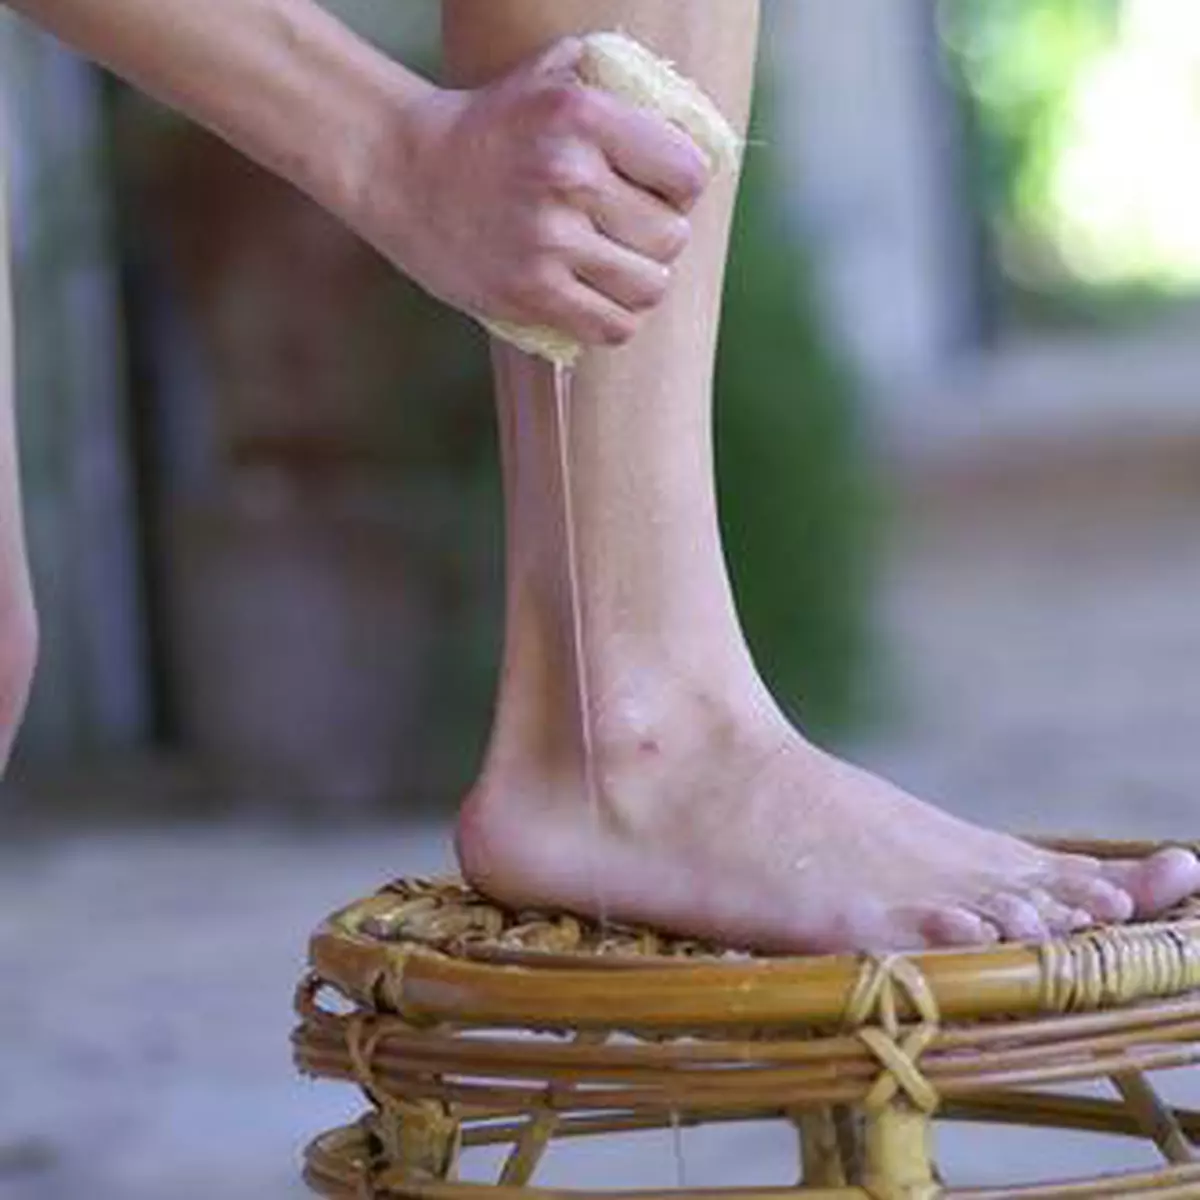 Masajul picioarelor este sigur pentru varice, care pot fi contraindicațiile?